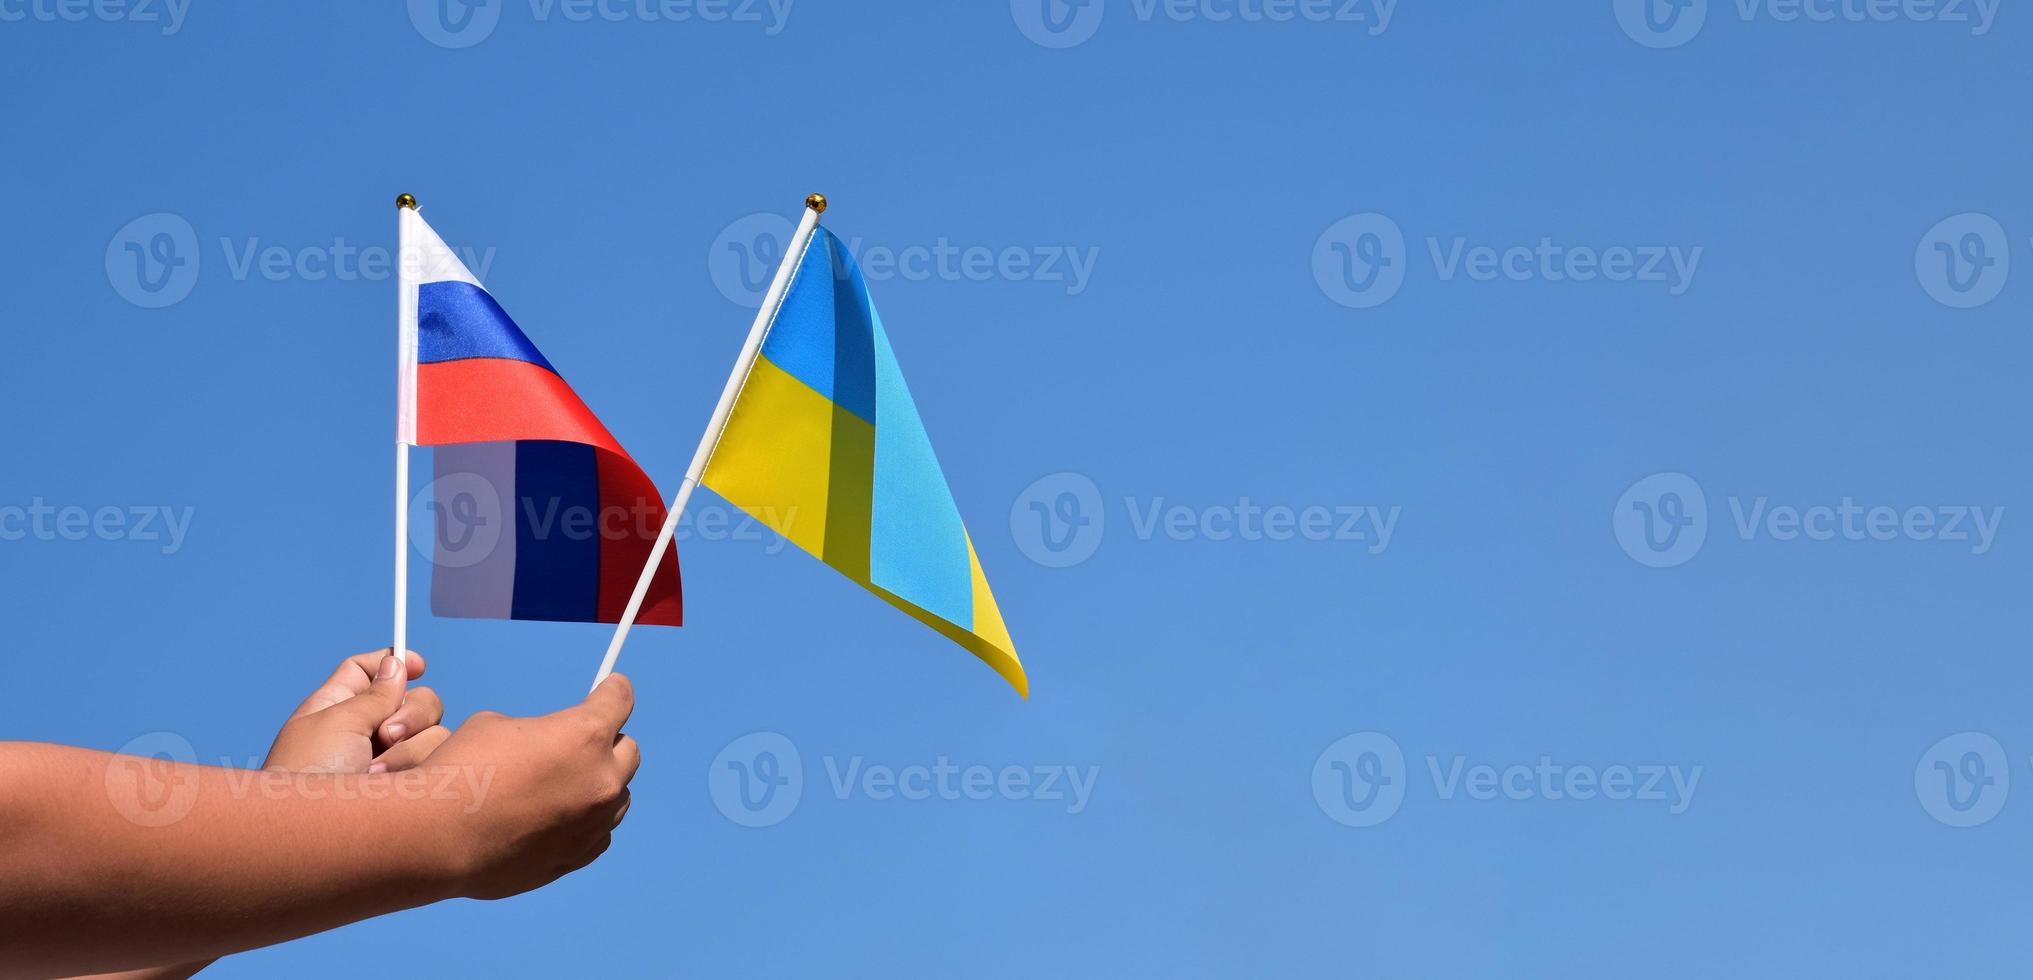 bandeira da rússia e bandeira da ucrânia, segurando nas mãos, fundo do céu azul, conceito para parar a guerra entre a rússia e a ucrânia, foco suave e seletivo, copie o espaço. foto